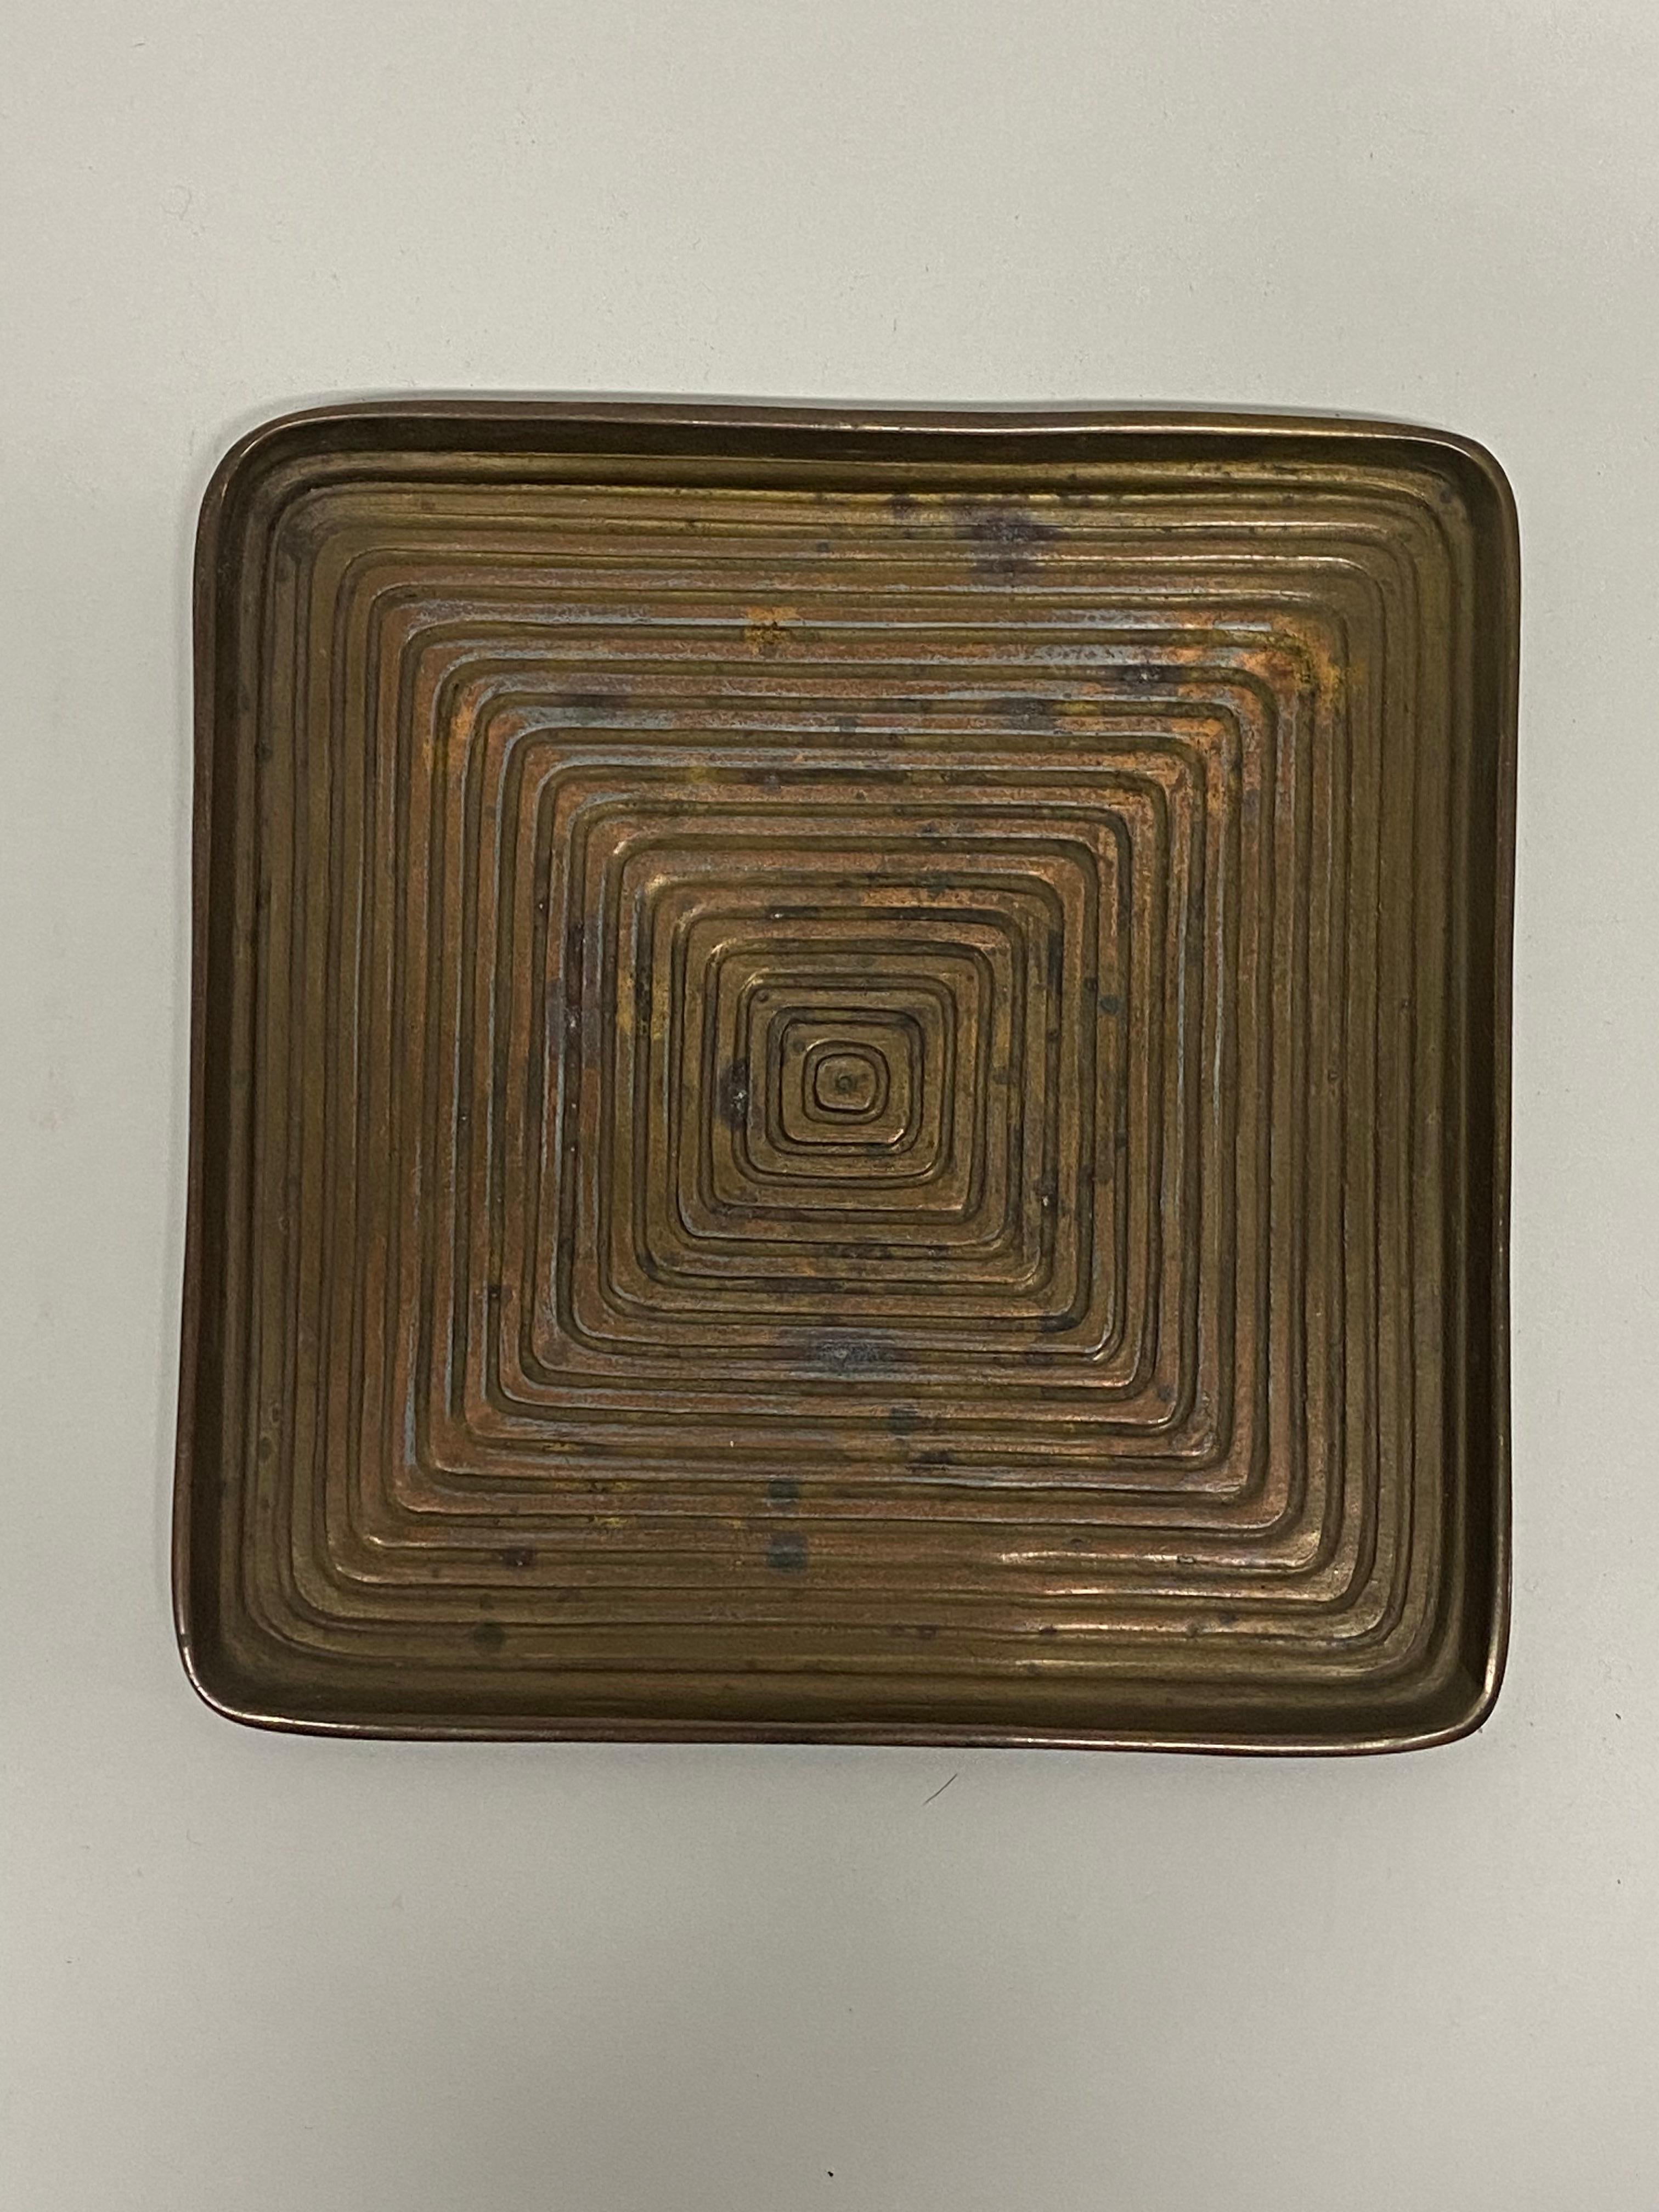 Plato cuadrado concéntrico de metal fundido diseñado por Ben Seibel para Jenfred. Alrededor de 1950. Seibel crea un bonito laberinto óptico de cuadrados concéntricos cada vez más grandes. Buen estado general con pequeñas oxidaciones y pátina verdi